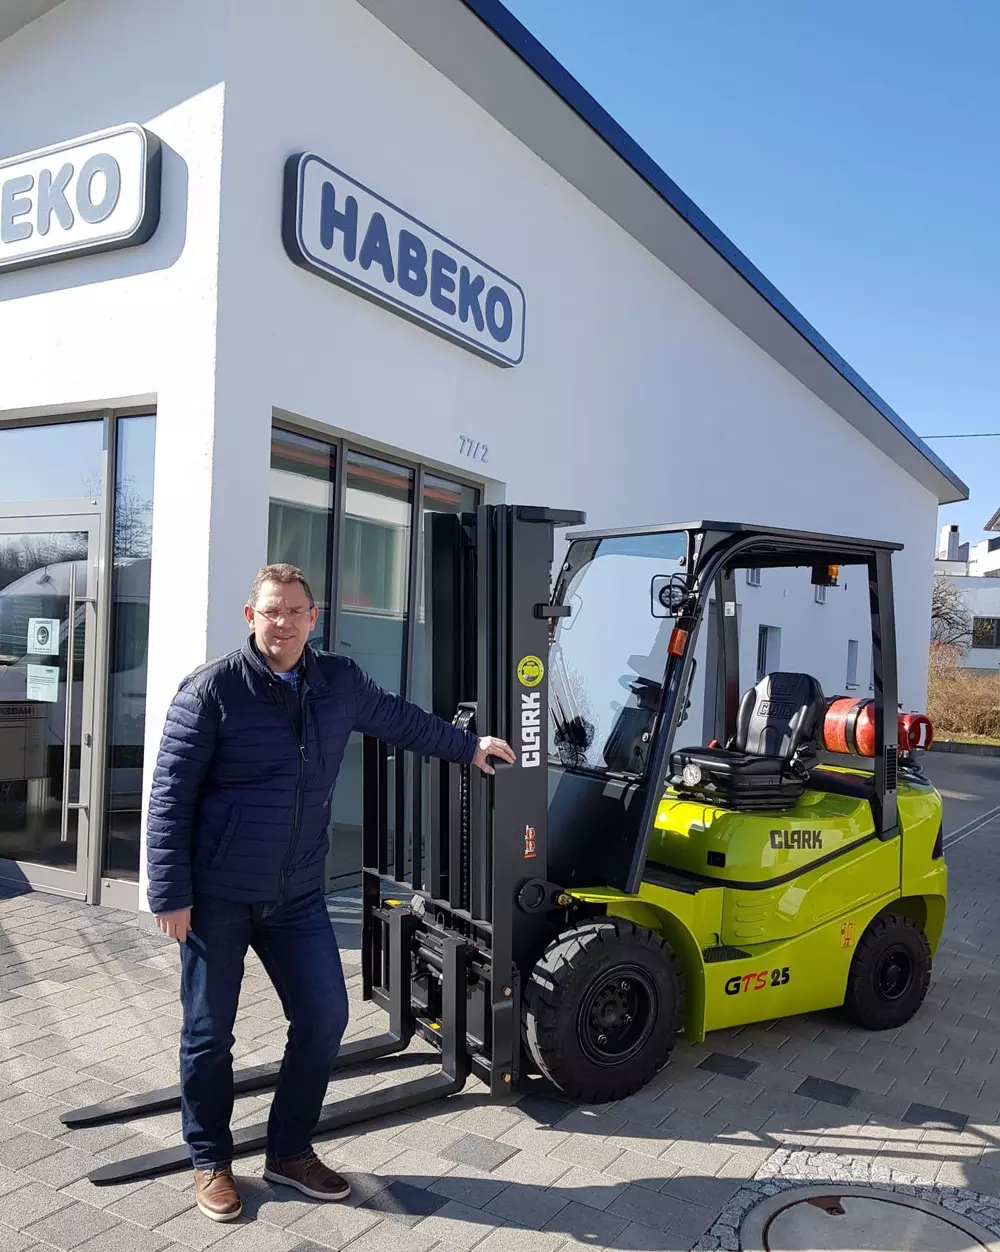 Dipl. Ing. (FH) Dirk Hail, Managing Partner Habeko GmbH & Co. KG